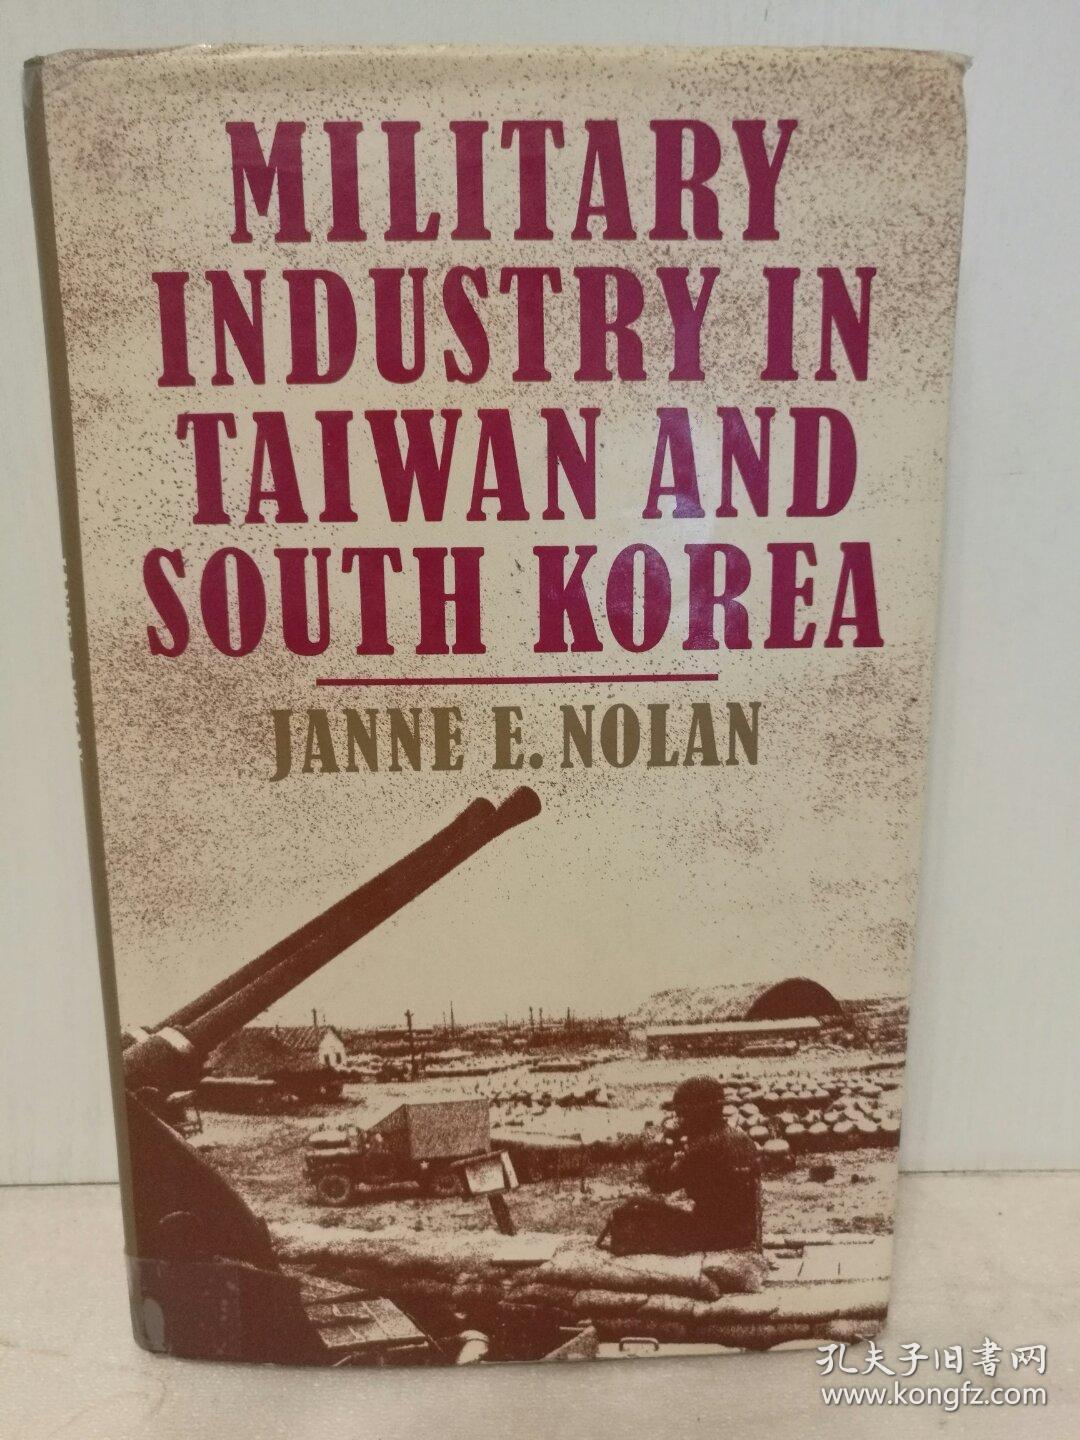 冷战时期美国东亚军事政策与台湾地区、韩国的